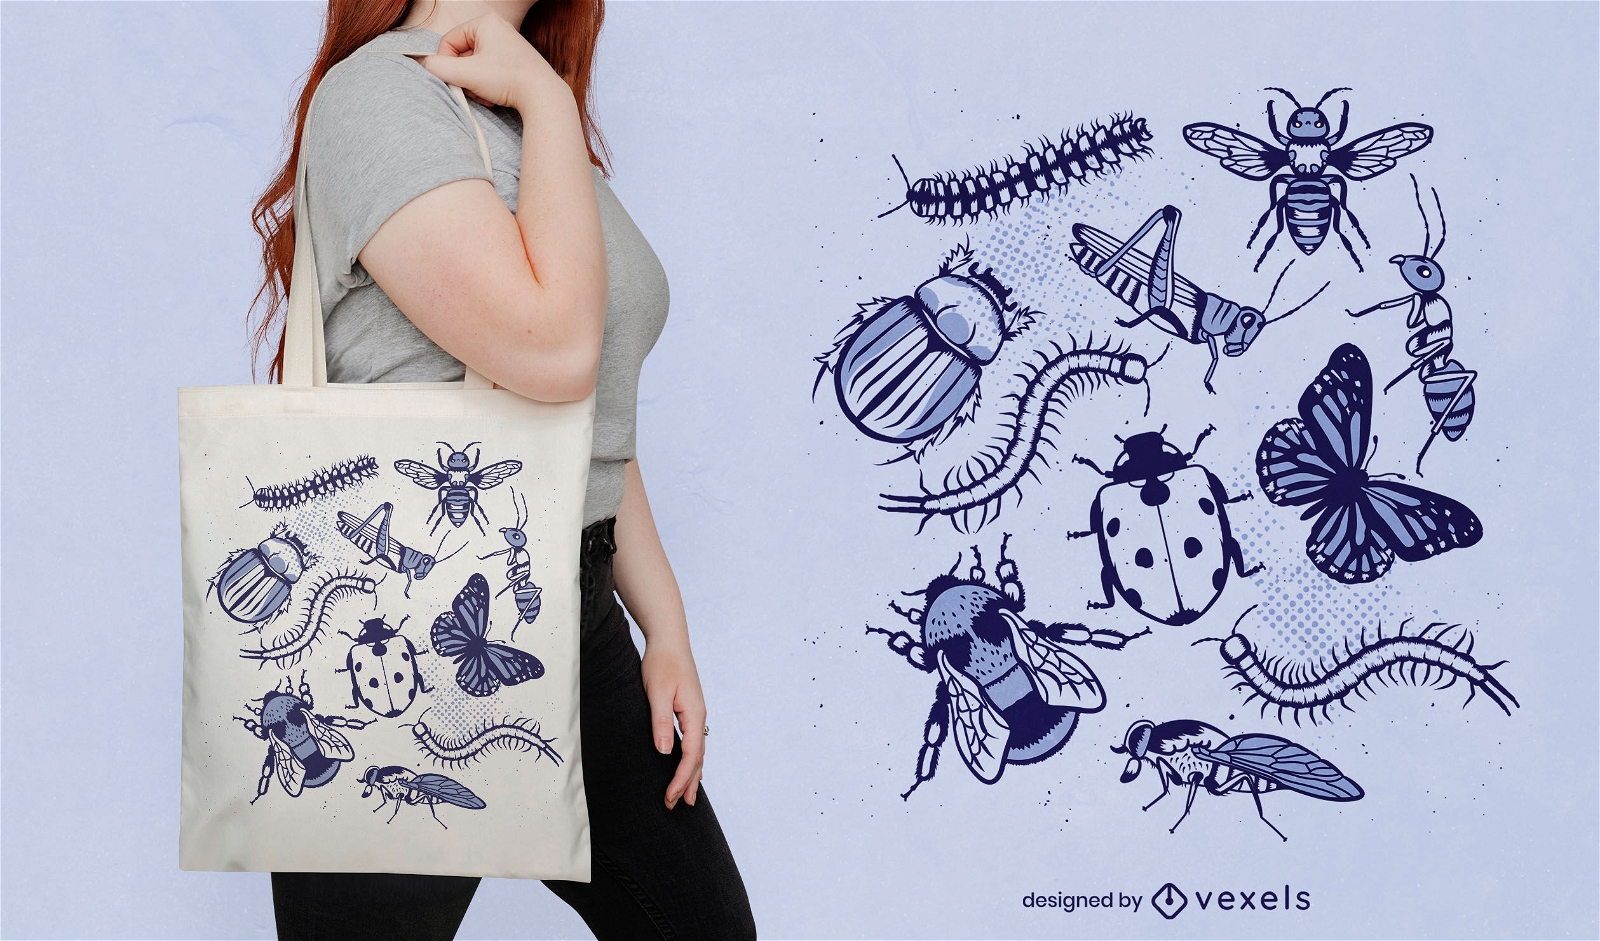 Diseño de bolso tote de insectos y animales.